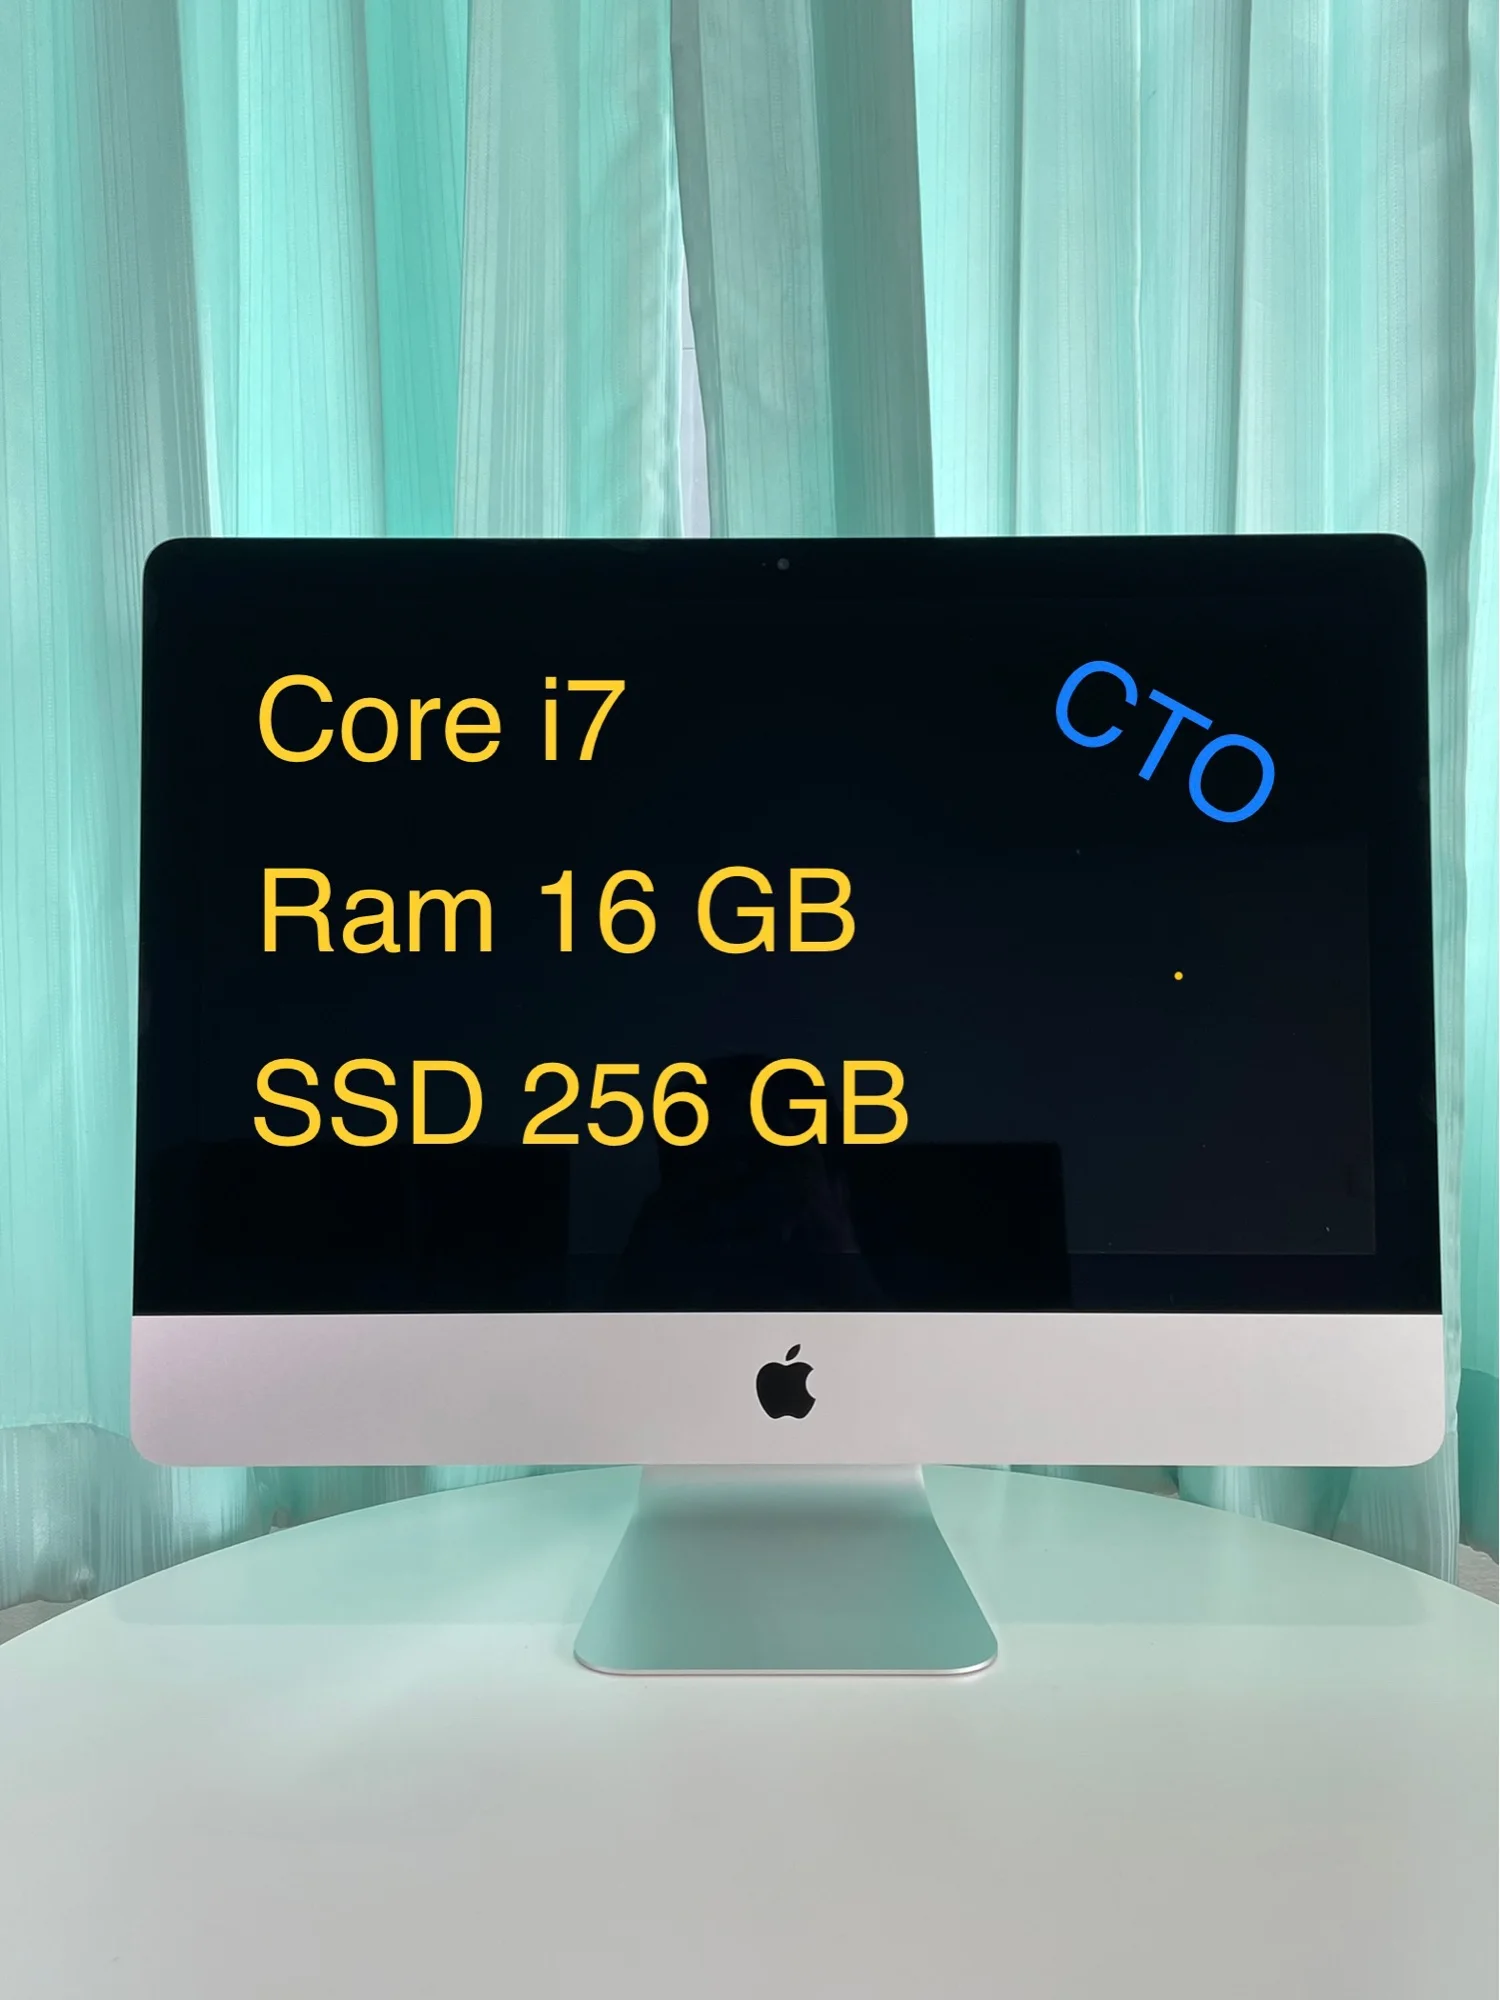 CTO iMac 21.5” ตัวท๊อป Core i7, SSD 256, Ram 16 GB, แรงๆ